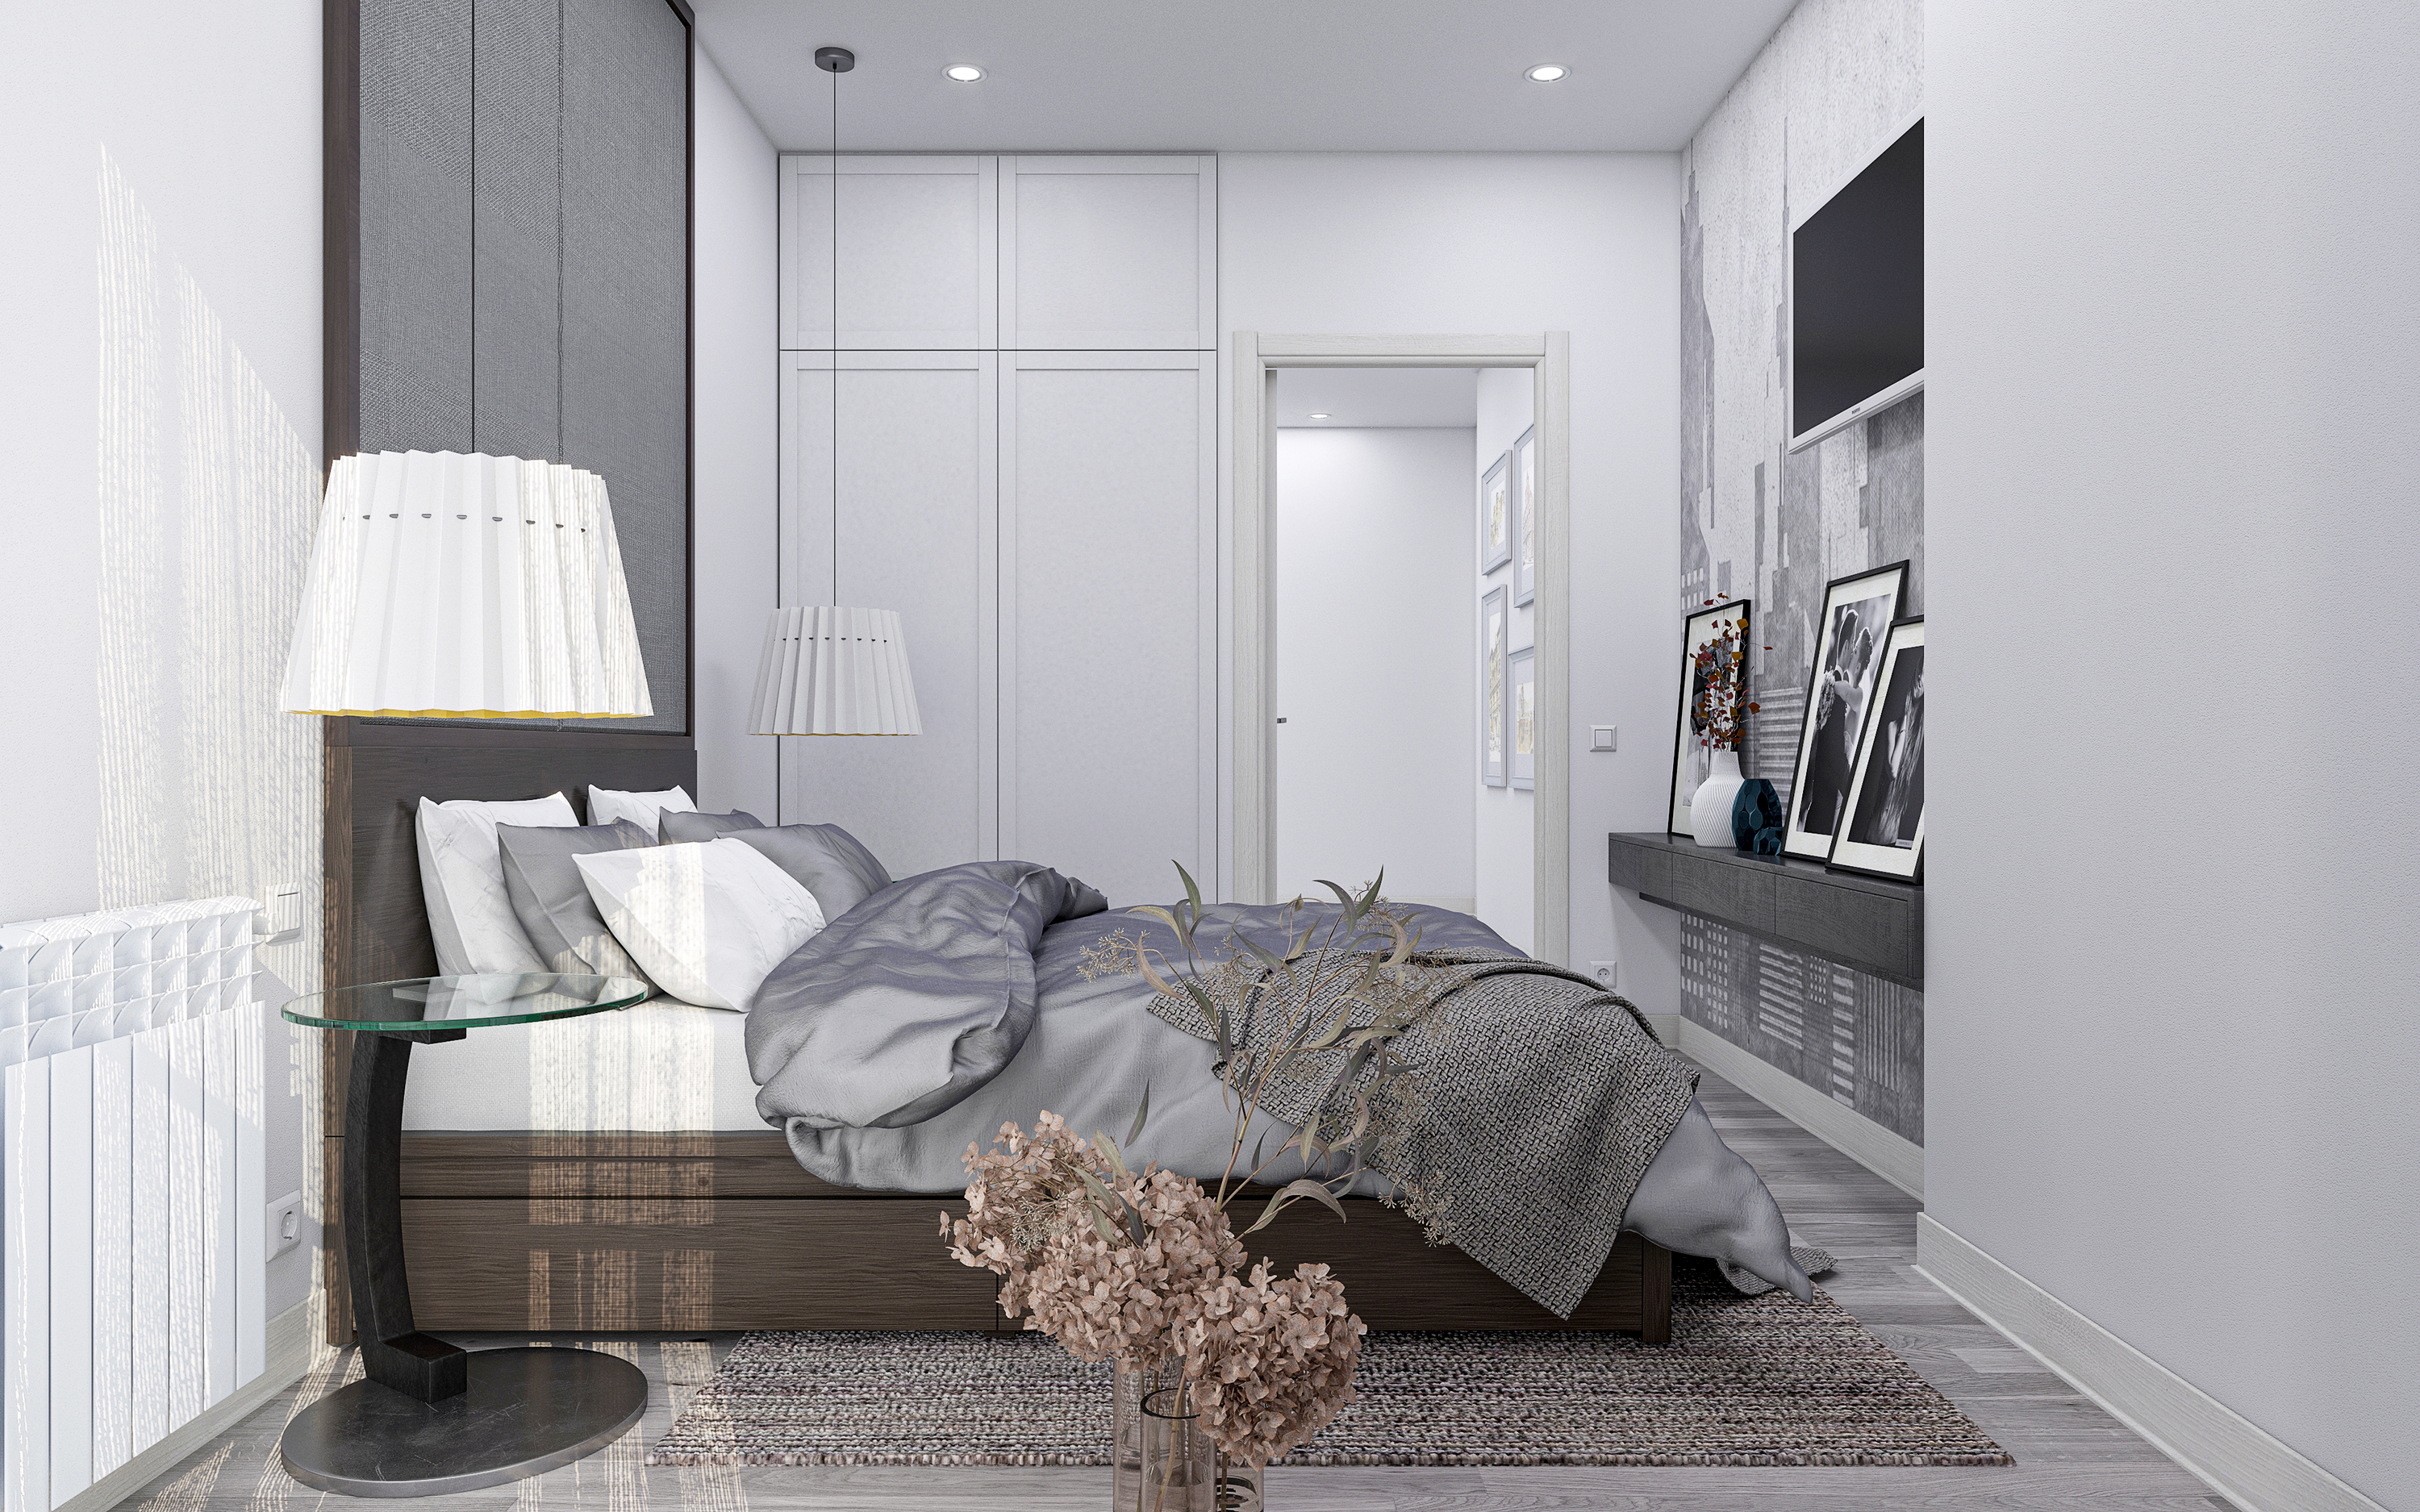 तीन कमरों का अपार्टमेंट S73 3d max corona render में प्रस्तुत छवि